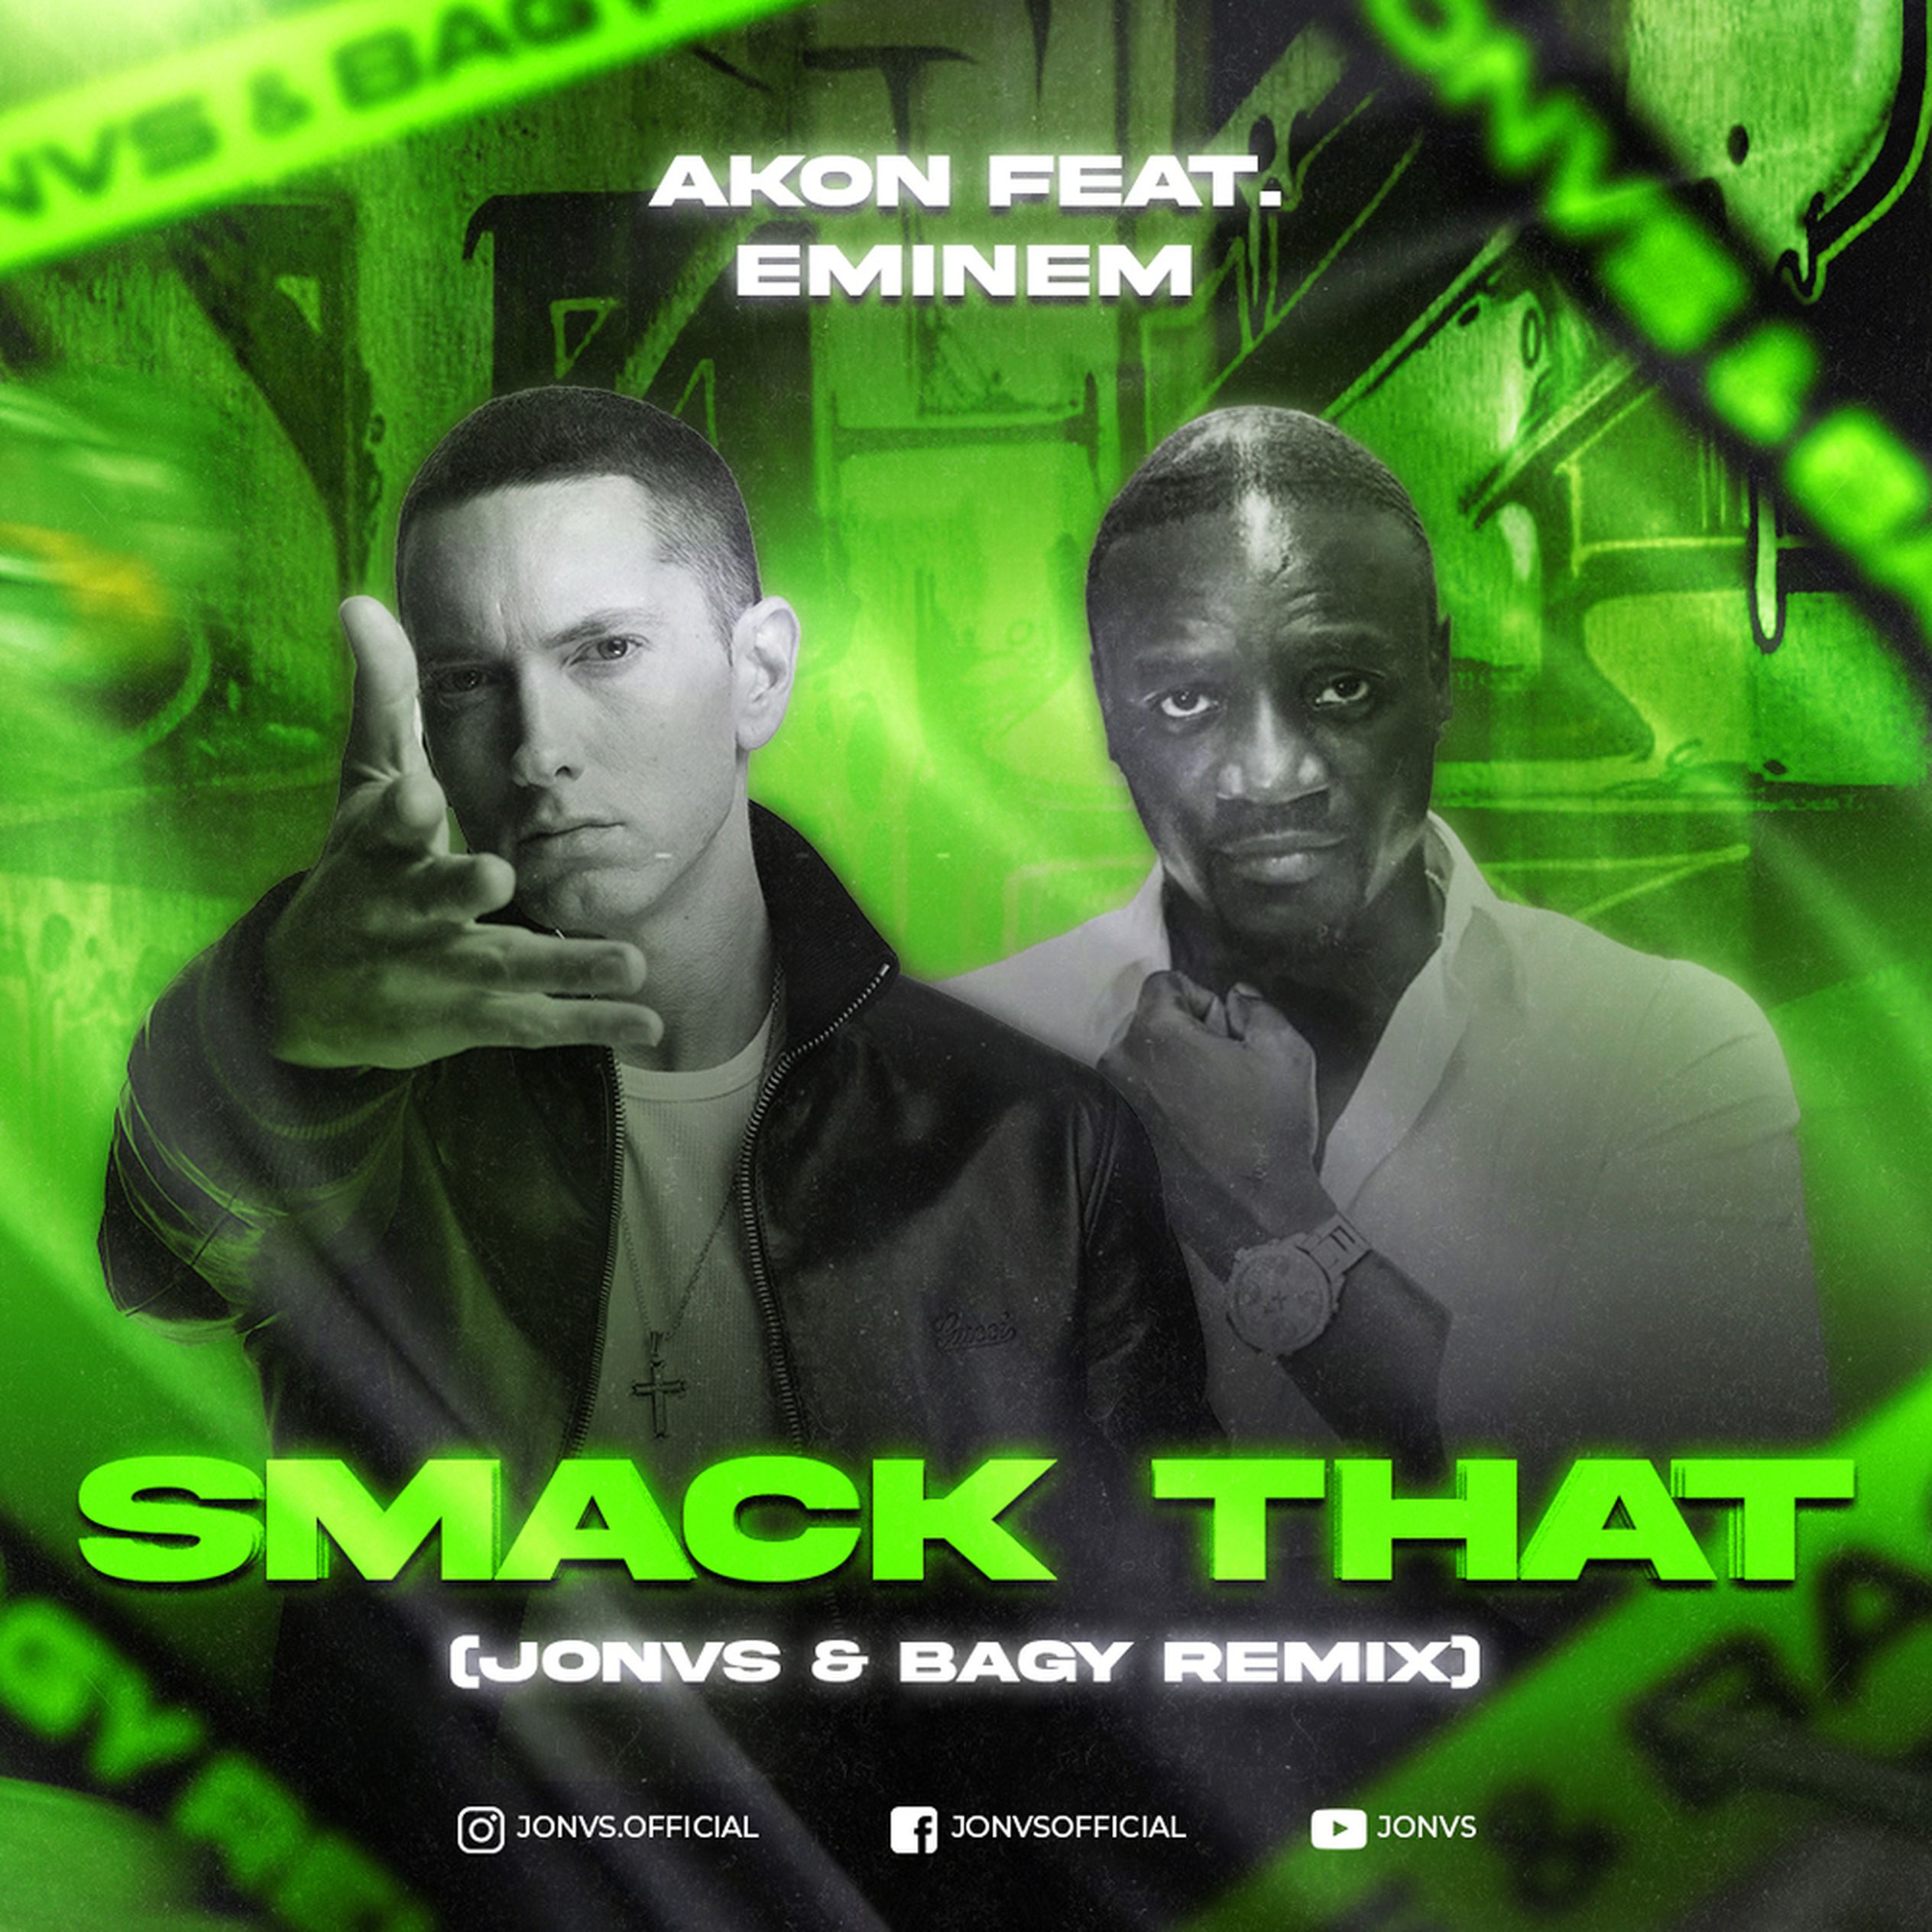 Smak that. Akon Eminem. Eminem Akon Smack. Smack that Эйкон. Akon ft. Eminem.